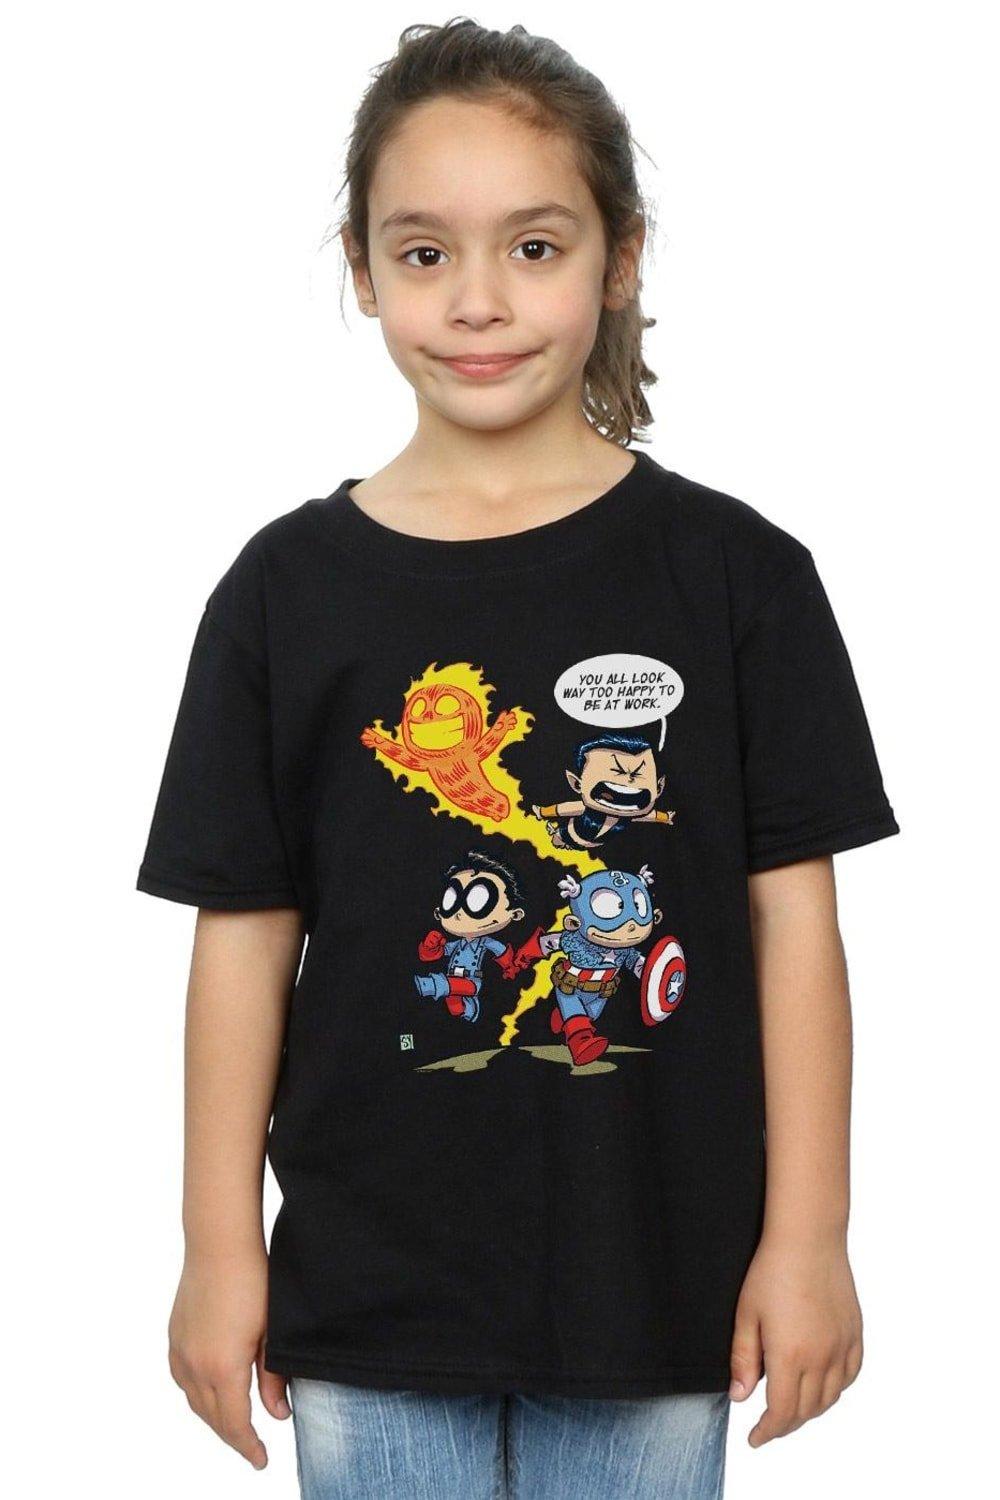 Avengers Invaders Cartoon Cotton T-Shirt